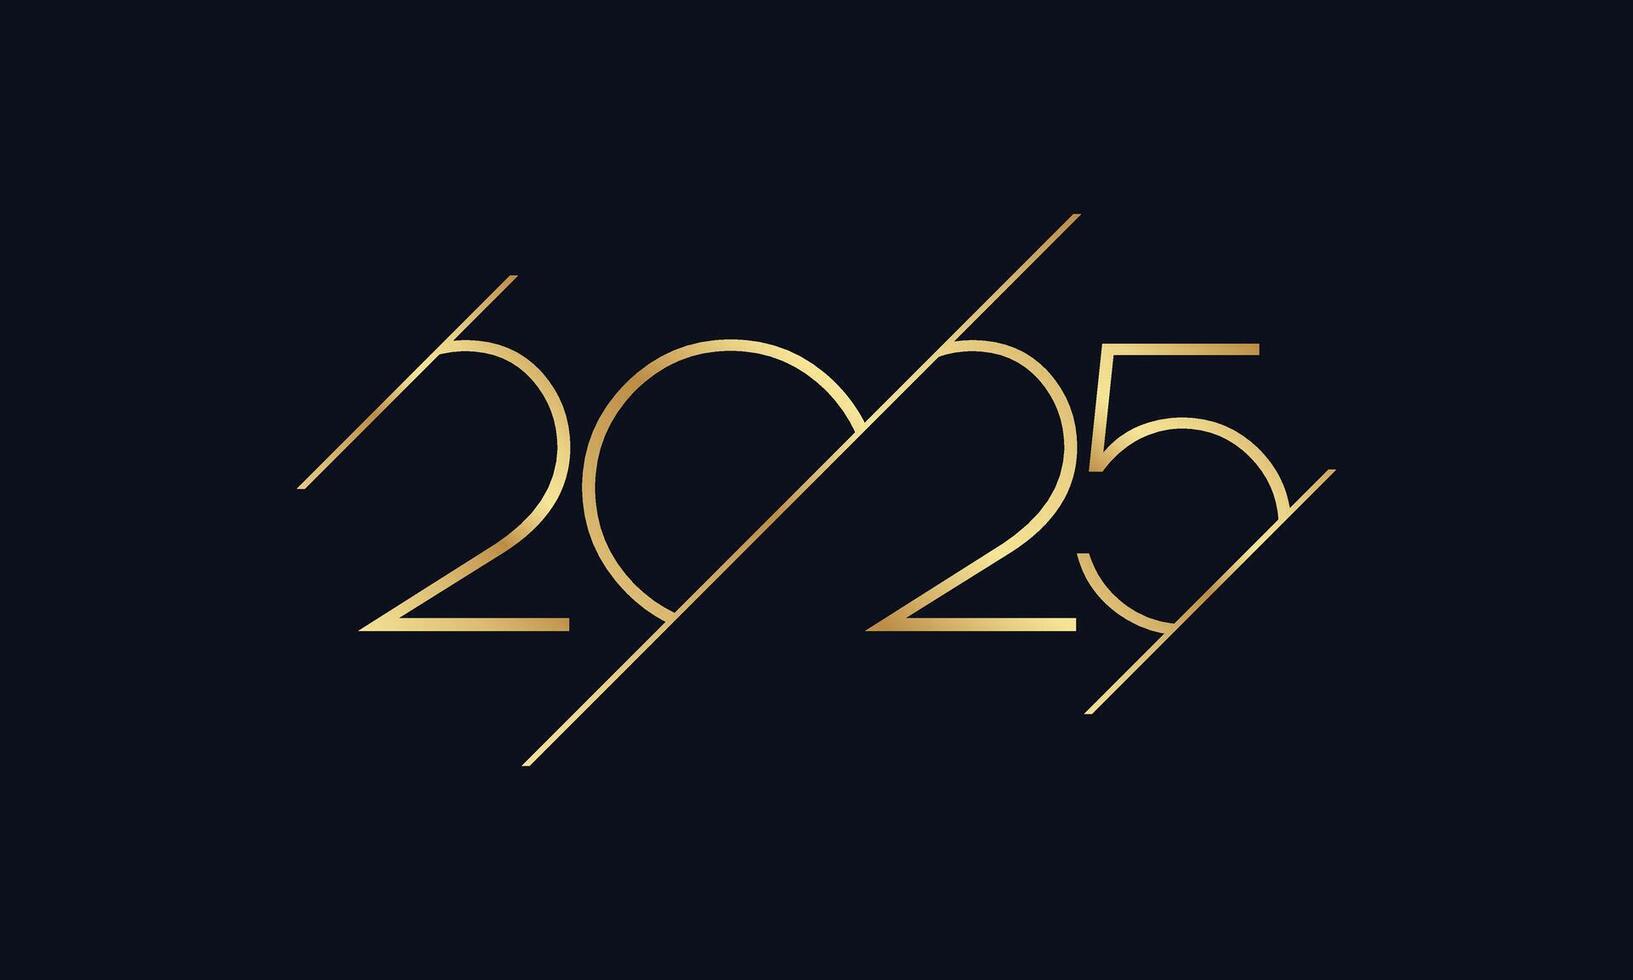 contento nuovo anno 2025 d'oro testo design. vettore